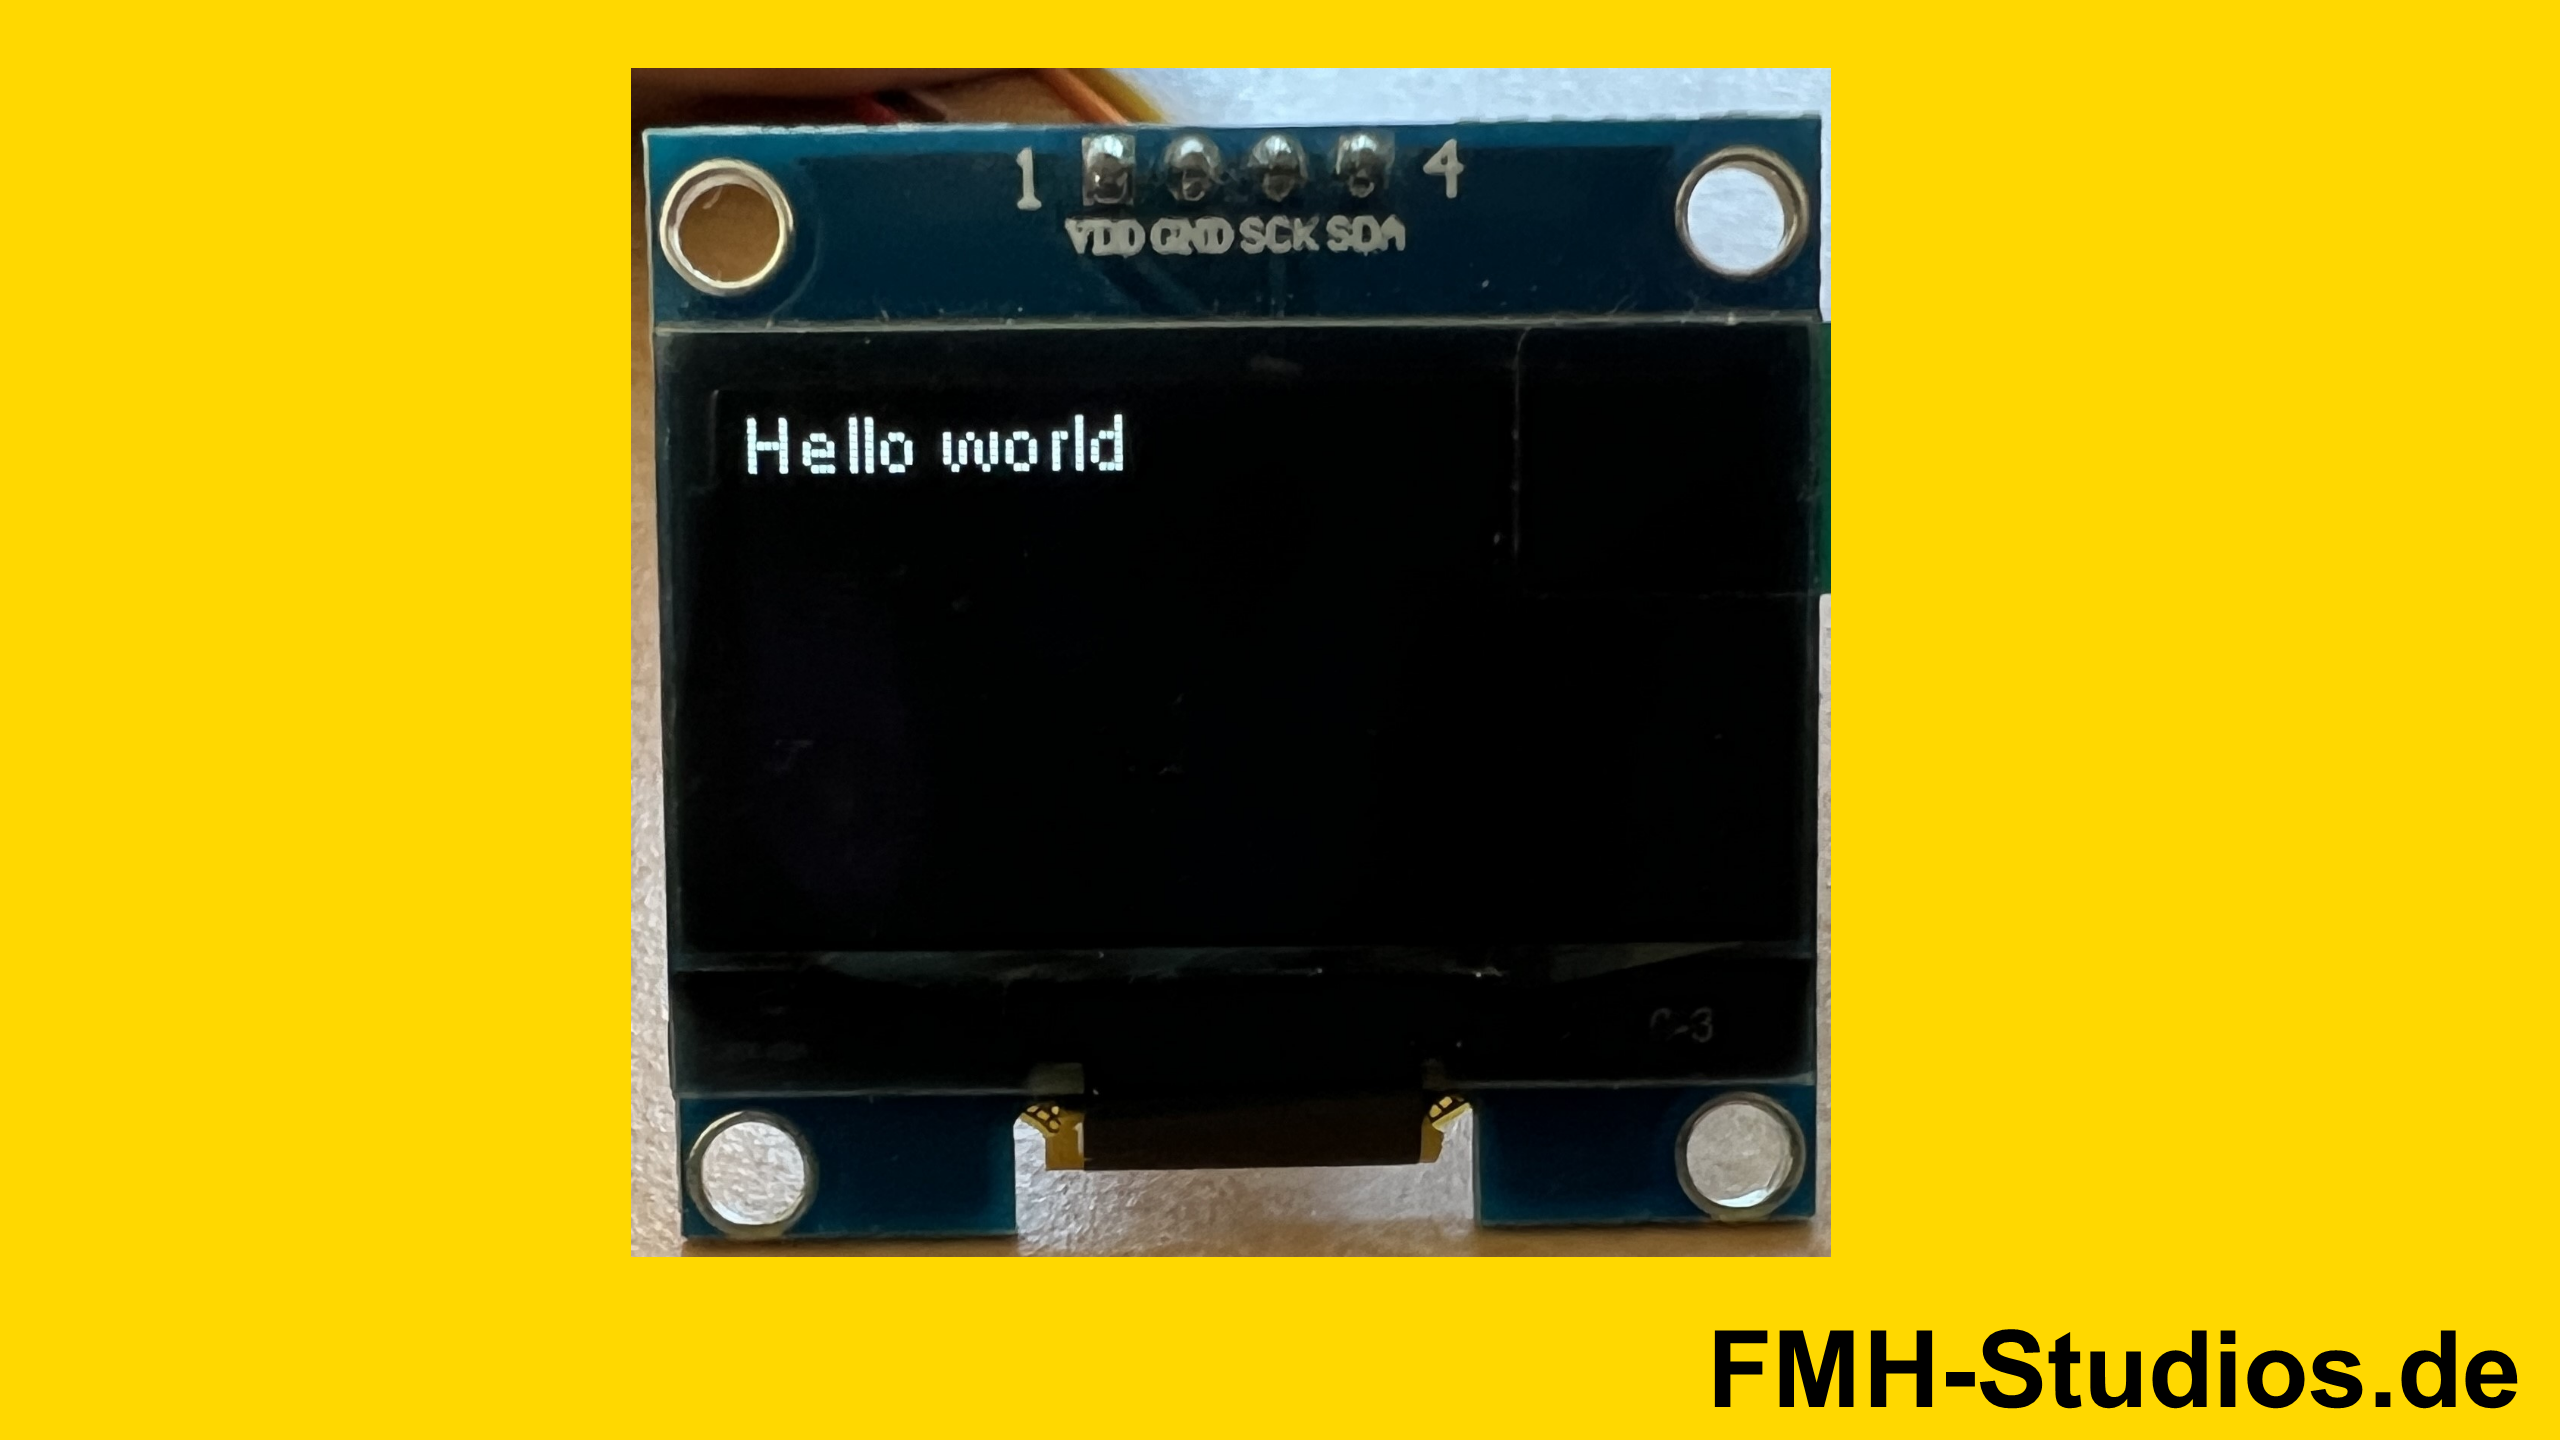 Beispiel ausführen - ESP32 - Arduino - ESP8266 - OLED - Display - 1.3 - 1,3 - Zoll - Inch - Tutorial